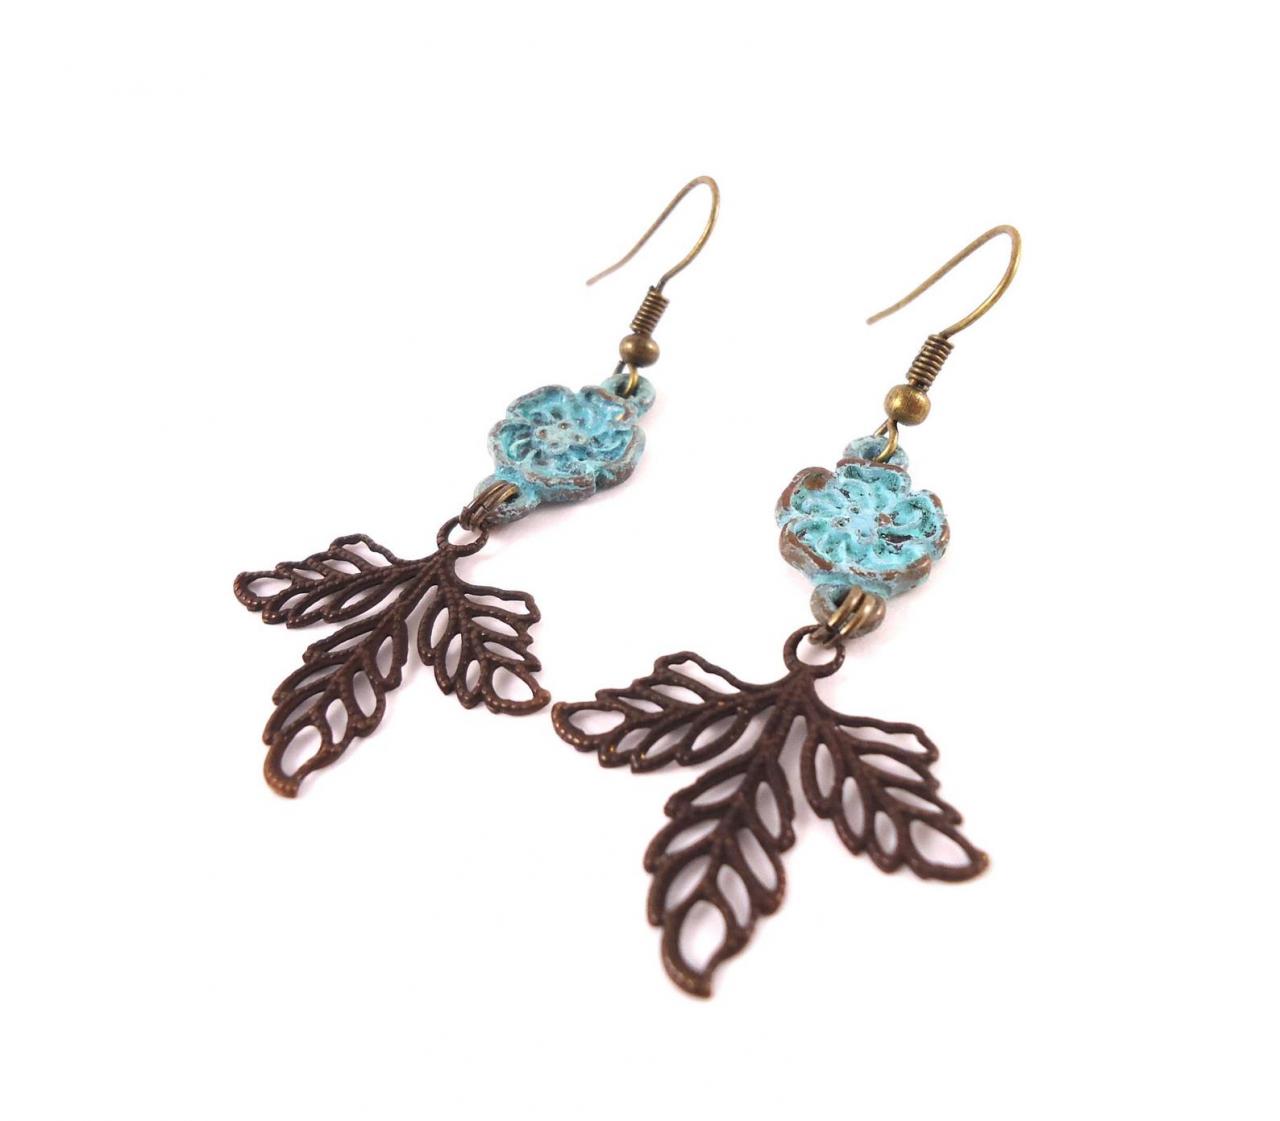 Rustic Leaf Jewelry - Boho Small Earrings - Turquoise Small Earrings - Rustic Small Earrings - Blue Dainty Earrings - Turquoise Dainty Earri